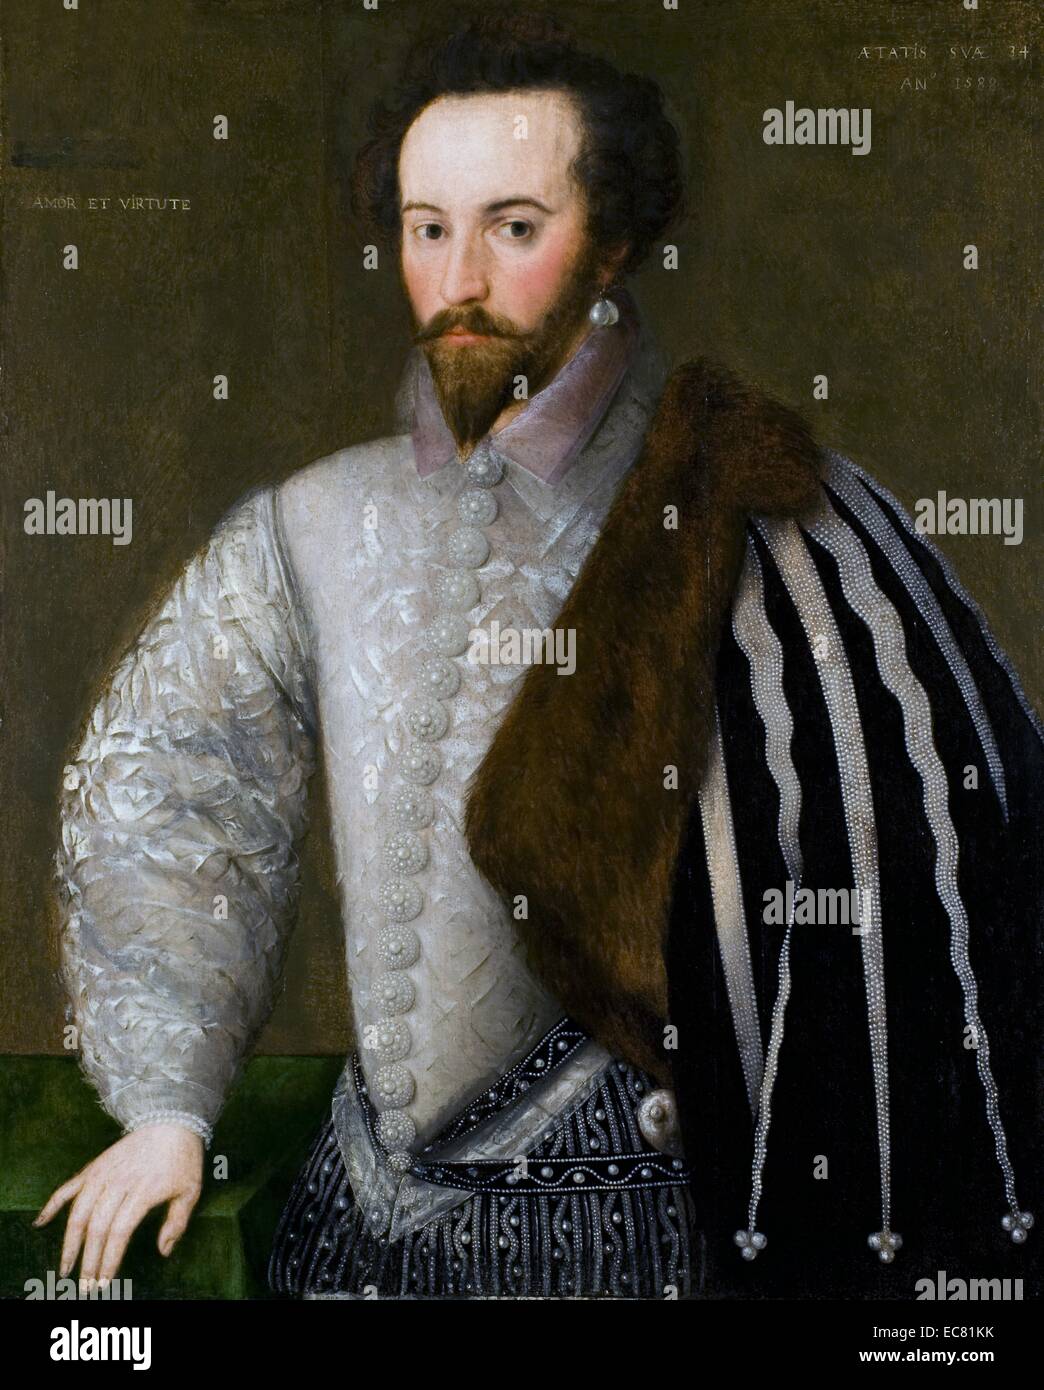 Ritratto di Sir Walter Raleigh (1552-1618) aristocratico inglese, scrittore, poeta, soldato, politico, cortigiano, spy ed Esplora risorse. Ha reso popolare il tabacco in Inghilterra. Datata XVI Secolo Foto Stock